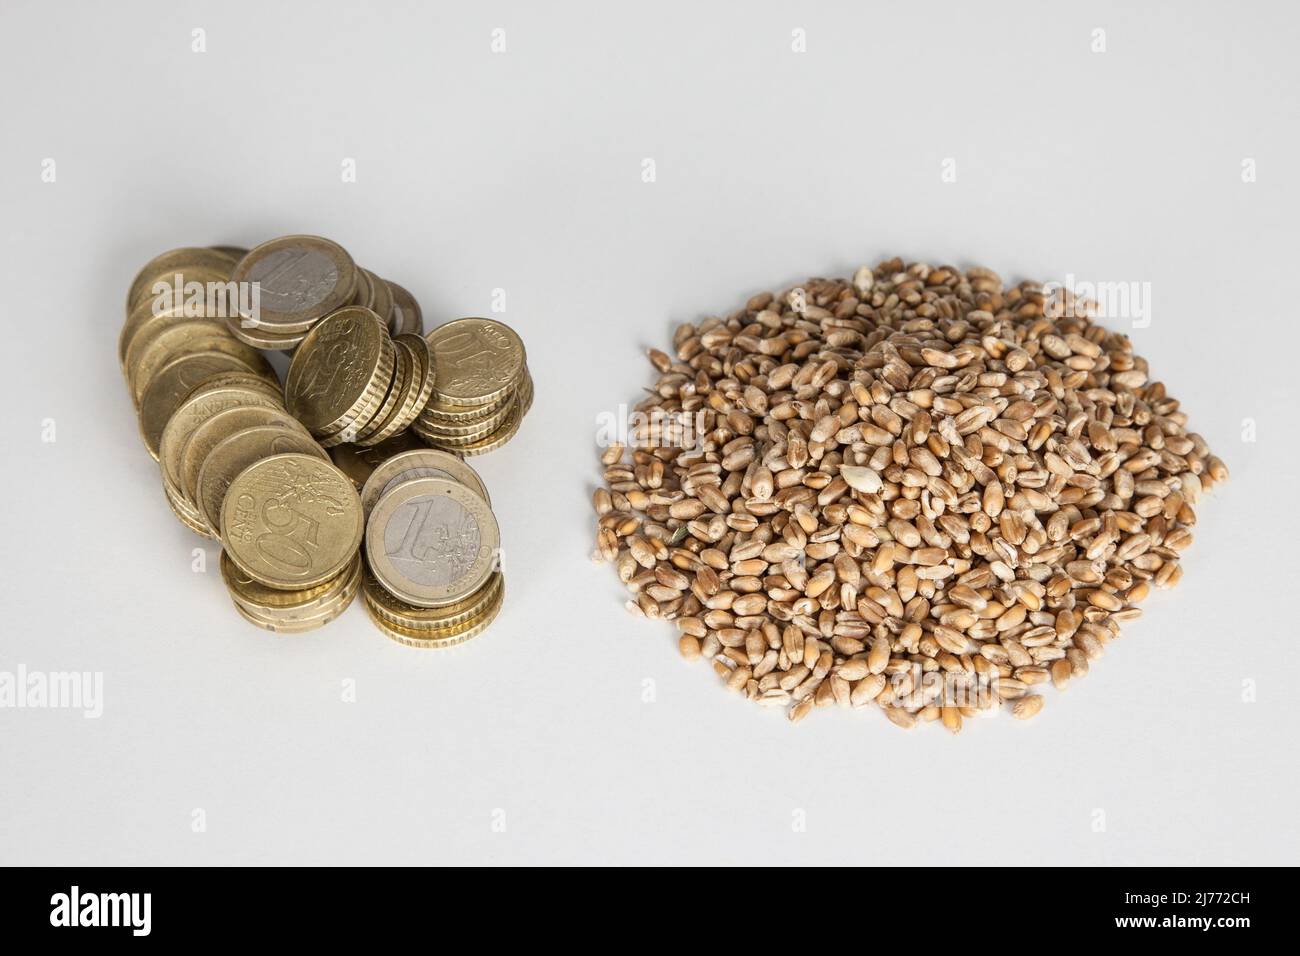 Una manciata di monete in euro si trova accanto ad una manciata di grano. Gli alti prezzi dei cereali spaventano gli agricoltori, i commercianti e i consumatori. Foto Stock